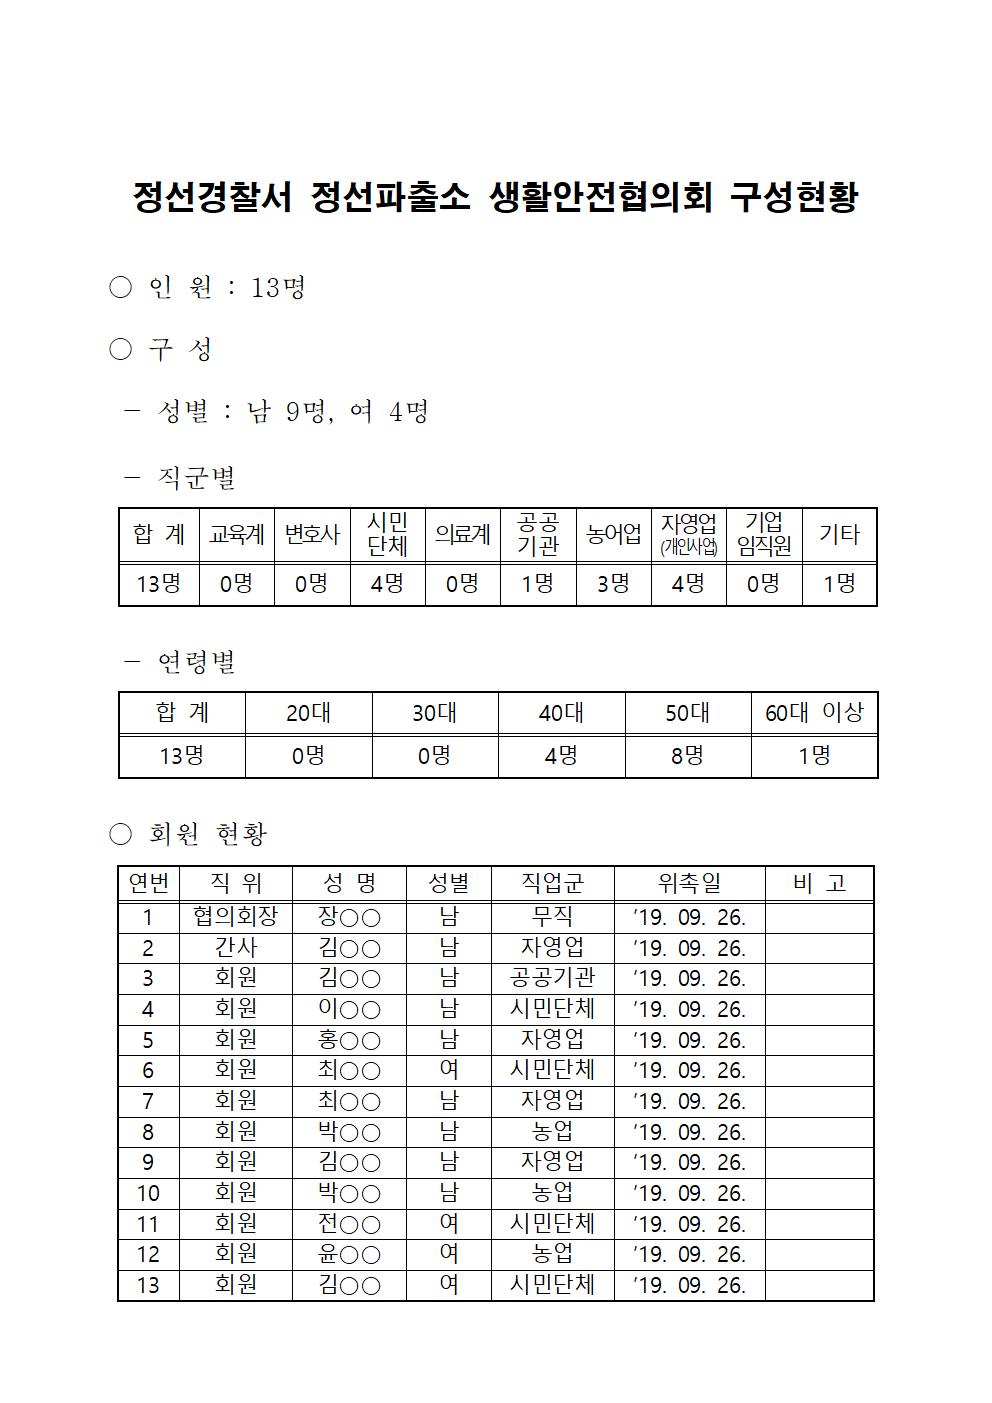 정선경찰서 생활안전협의회 구성 현황-정선 생활안전협의회(완료)001